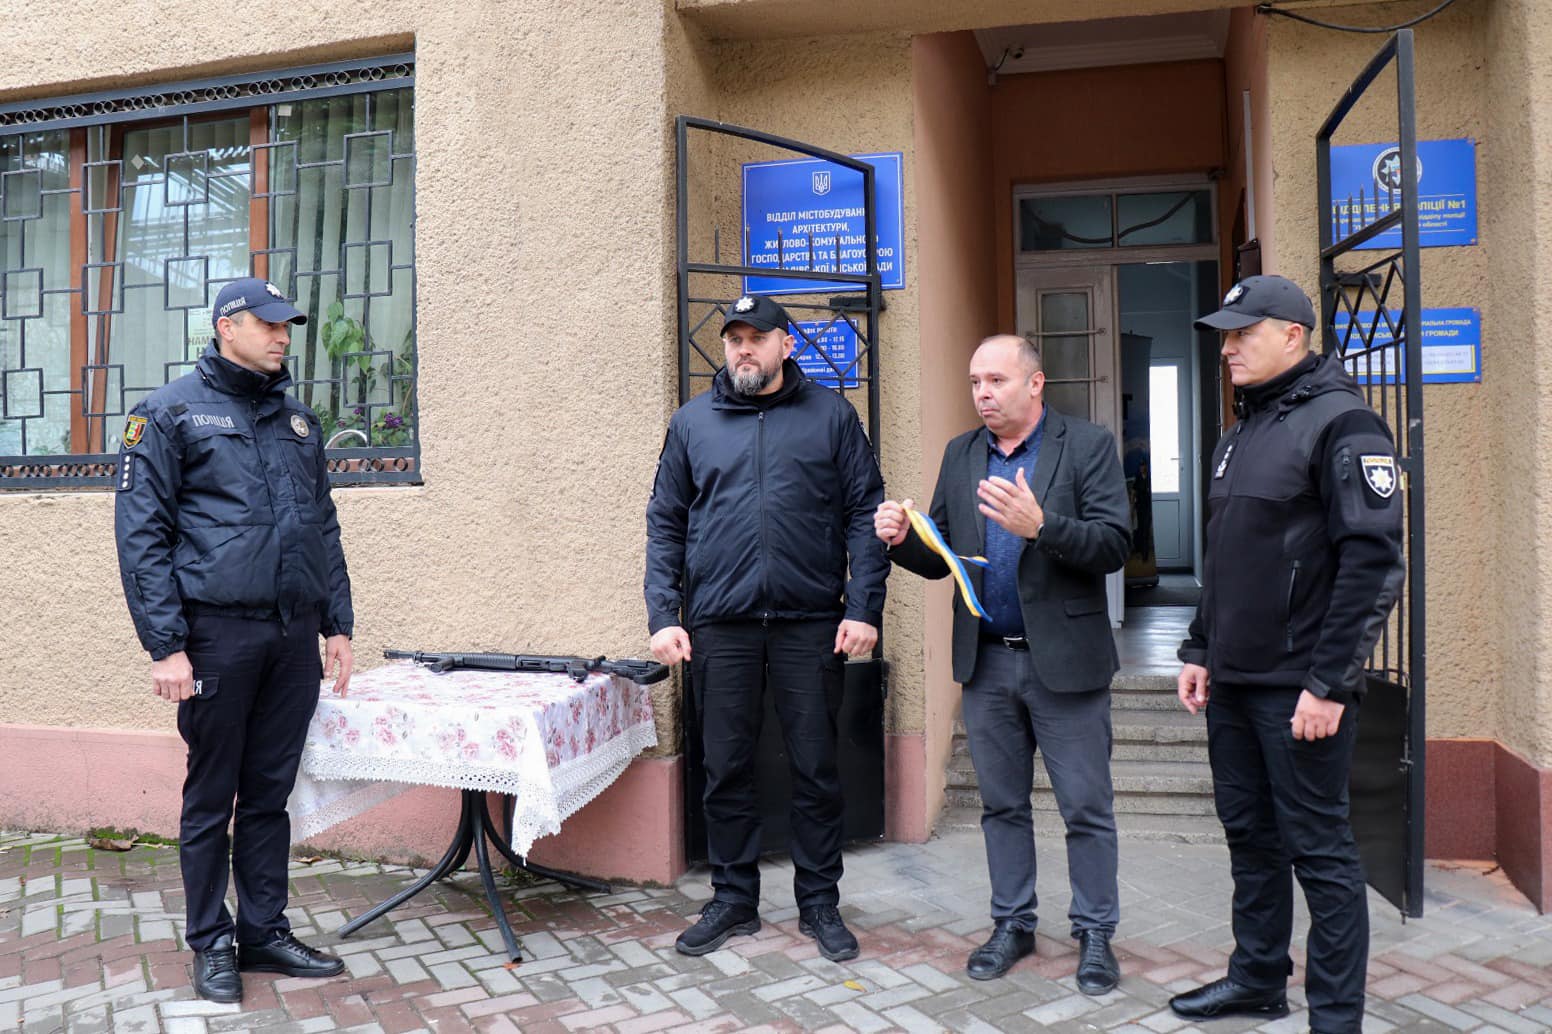 У Виноградівській територіальній громаді відбулось відкриття поліцейської станції. Службове приміщення функціонуватиме у якості «пункту безпеки» та цілодобової допомоги для понад 63 тисяч громадян.